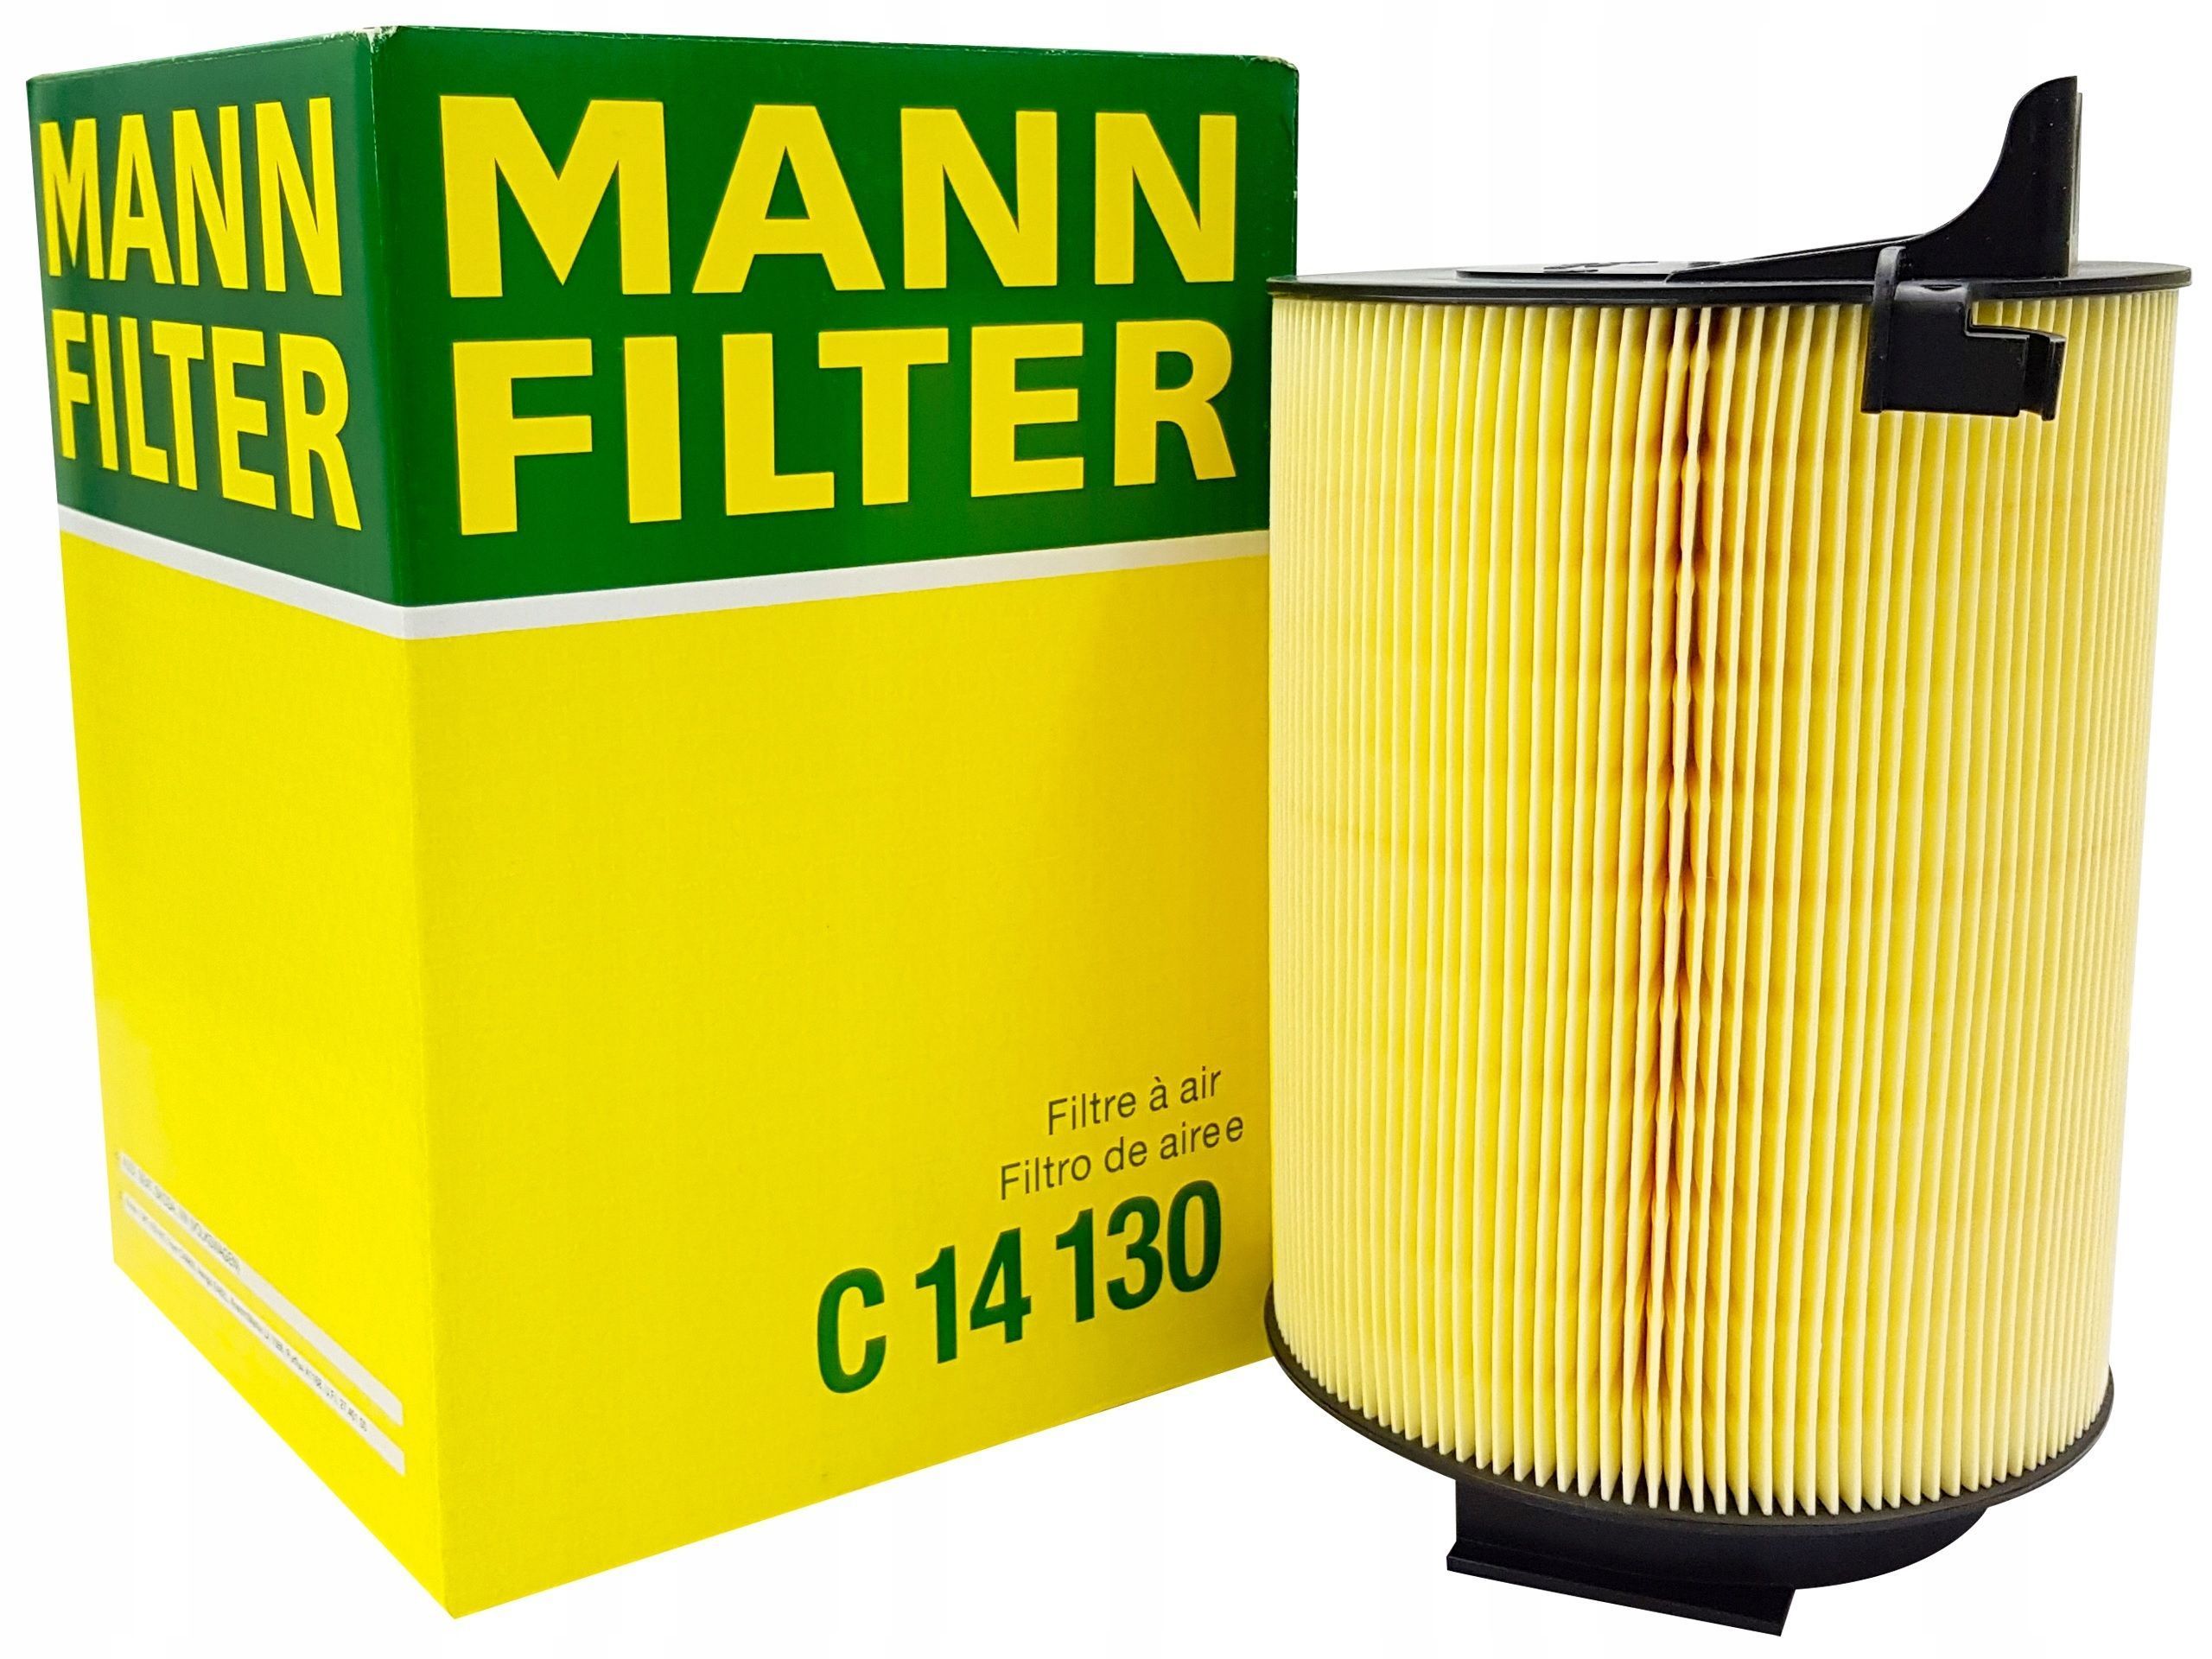 Mann filter воздушный фильтр. Фильтр воздушный Mann Filter c20500. Фильтр воздушный Mann c14130. Фильтр воздушный Mann-Filter c31014. Воздушный фильтр Mann-Filter c27050.